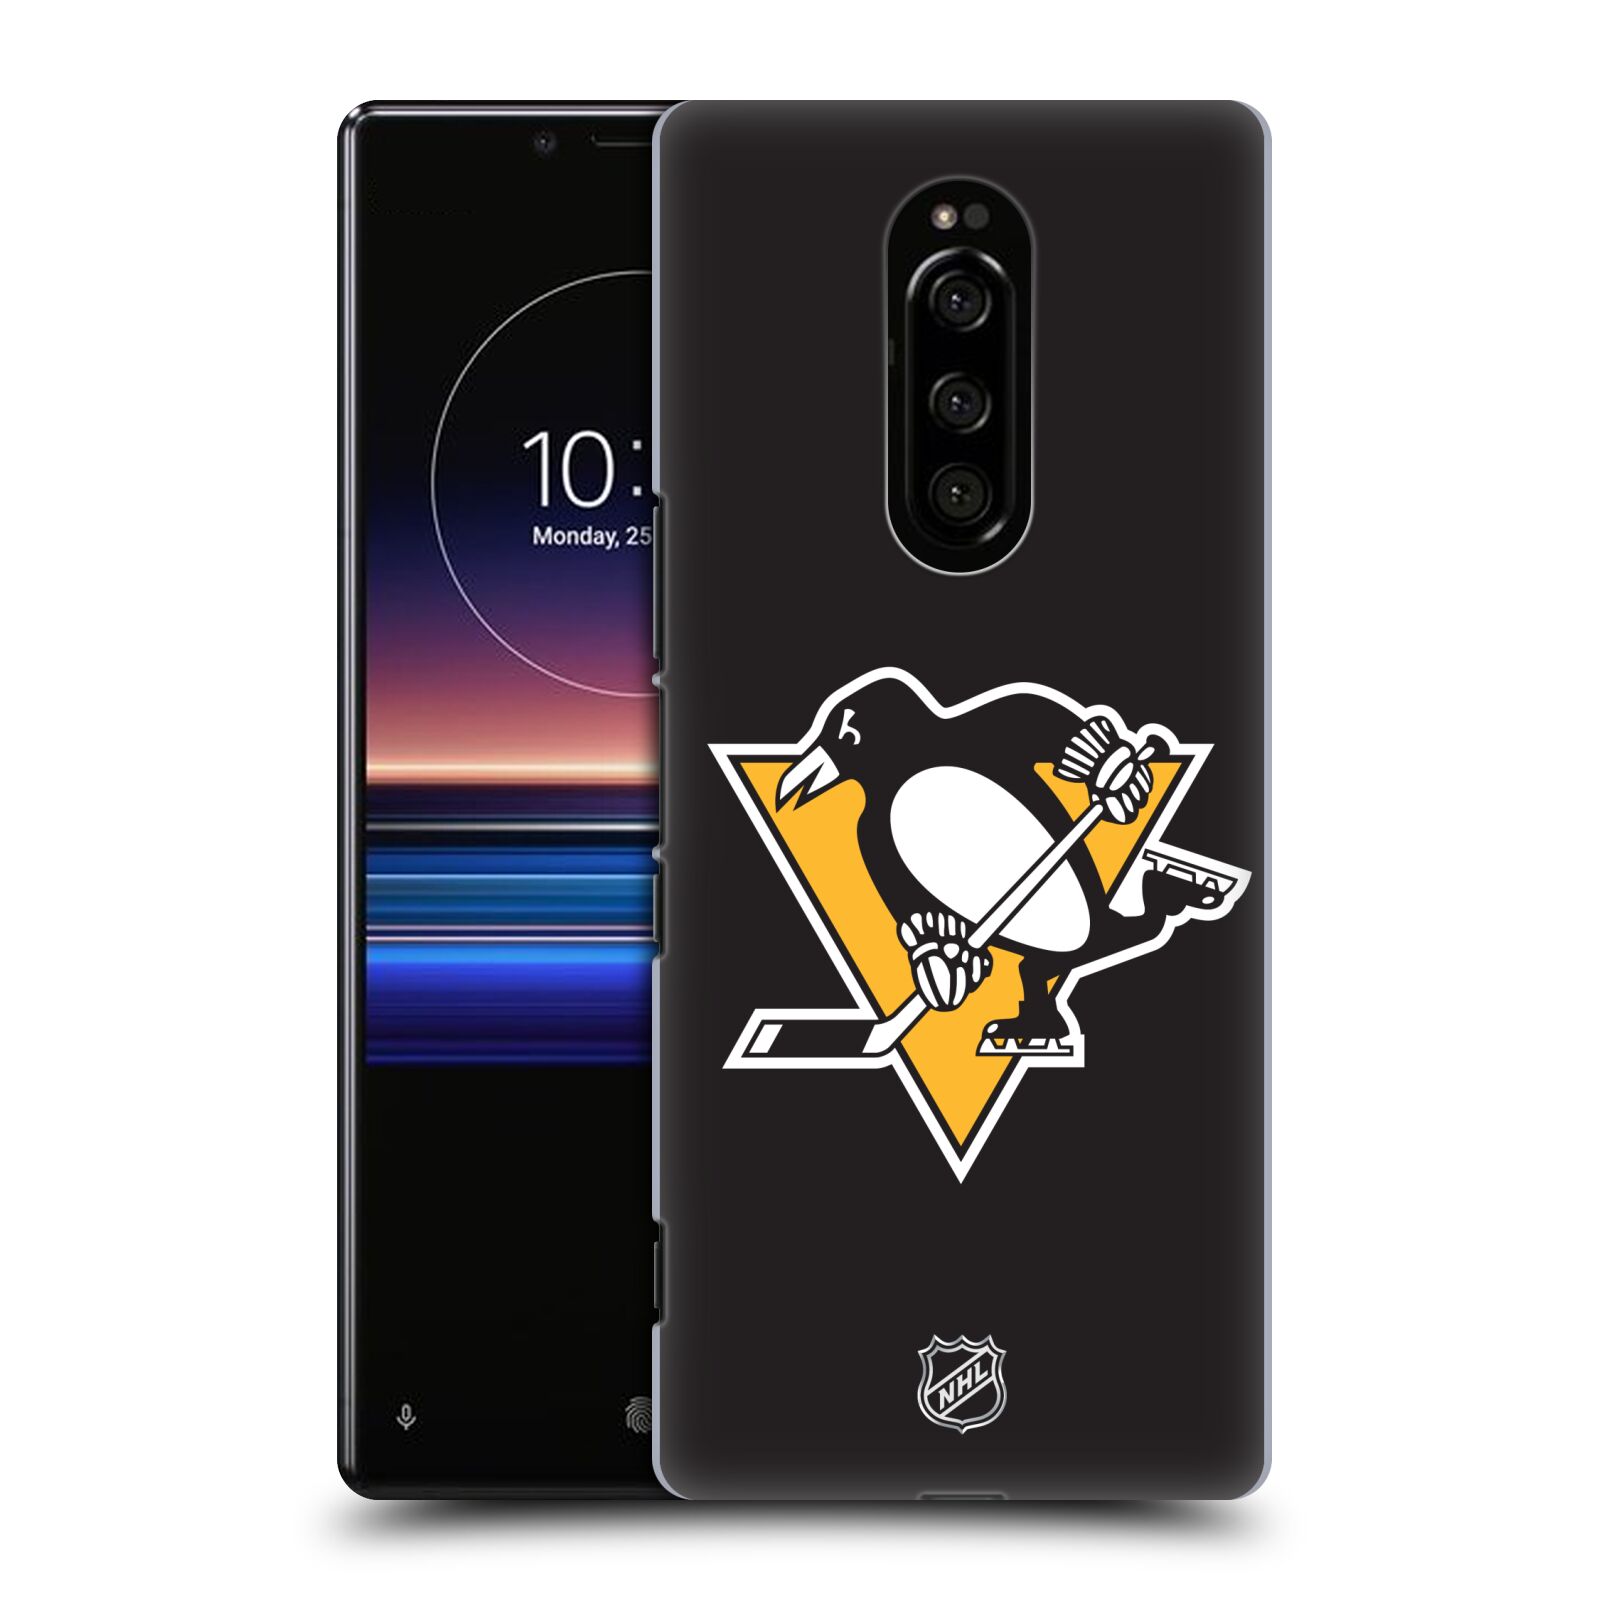 Pouzdro na mobil Sony Xperia 1 - HEAD CASE - Hokej NHL - Pittsburgh Penguins - černé pozadí znak